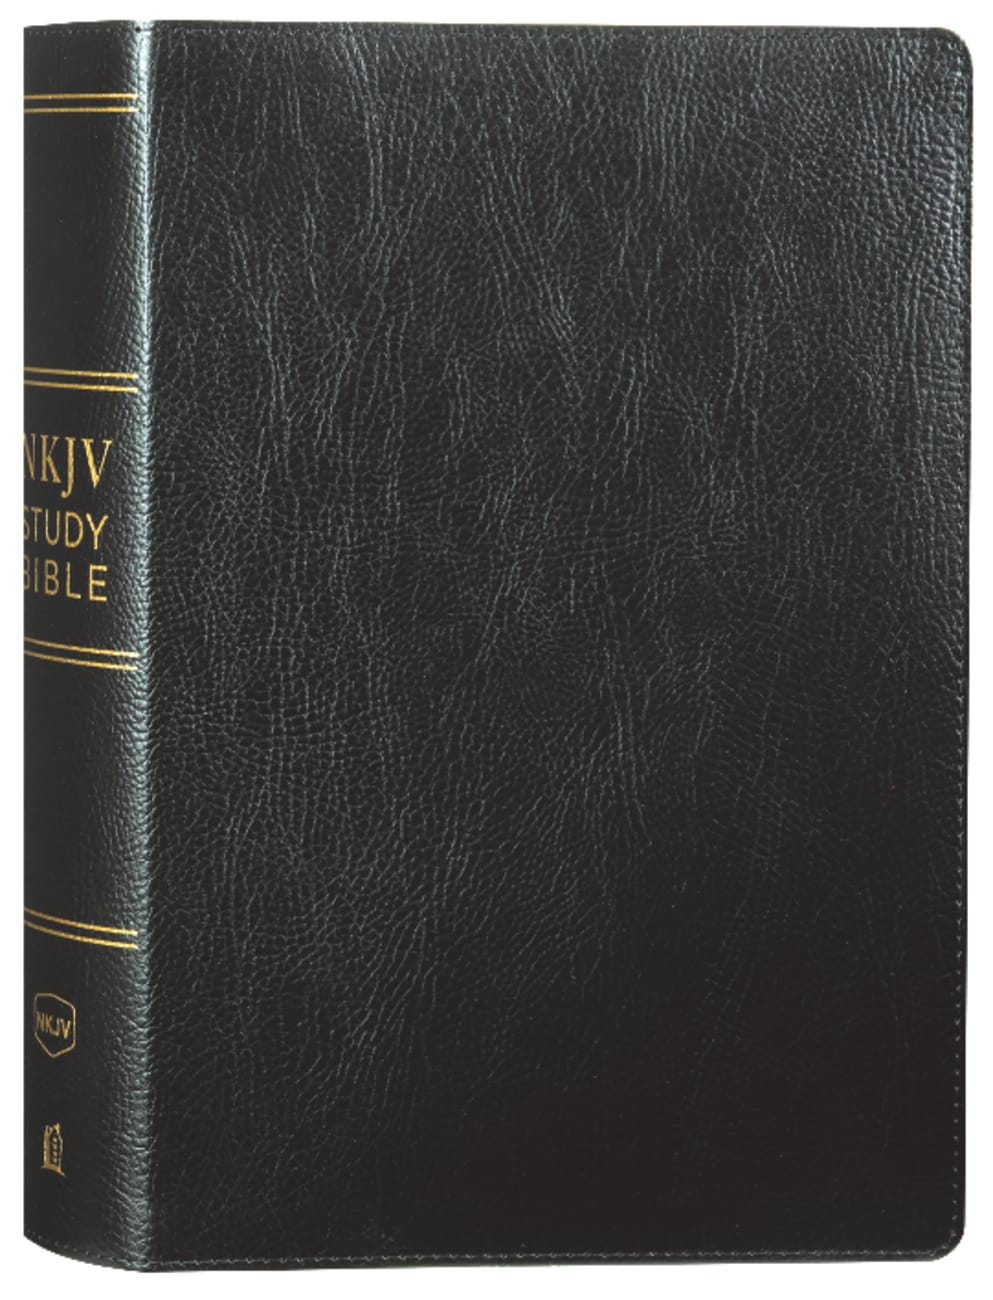 NKJV Study Bible Black (Black Letter Edition) Bonded Leather